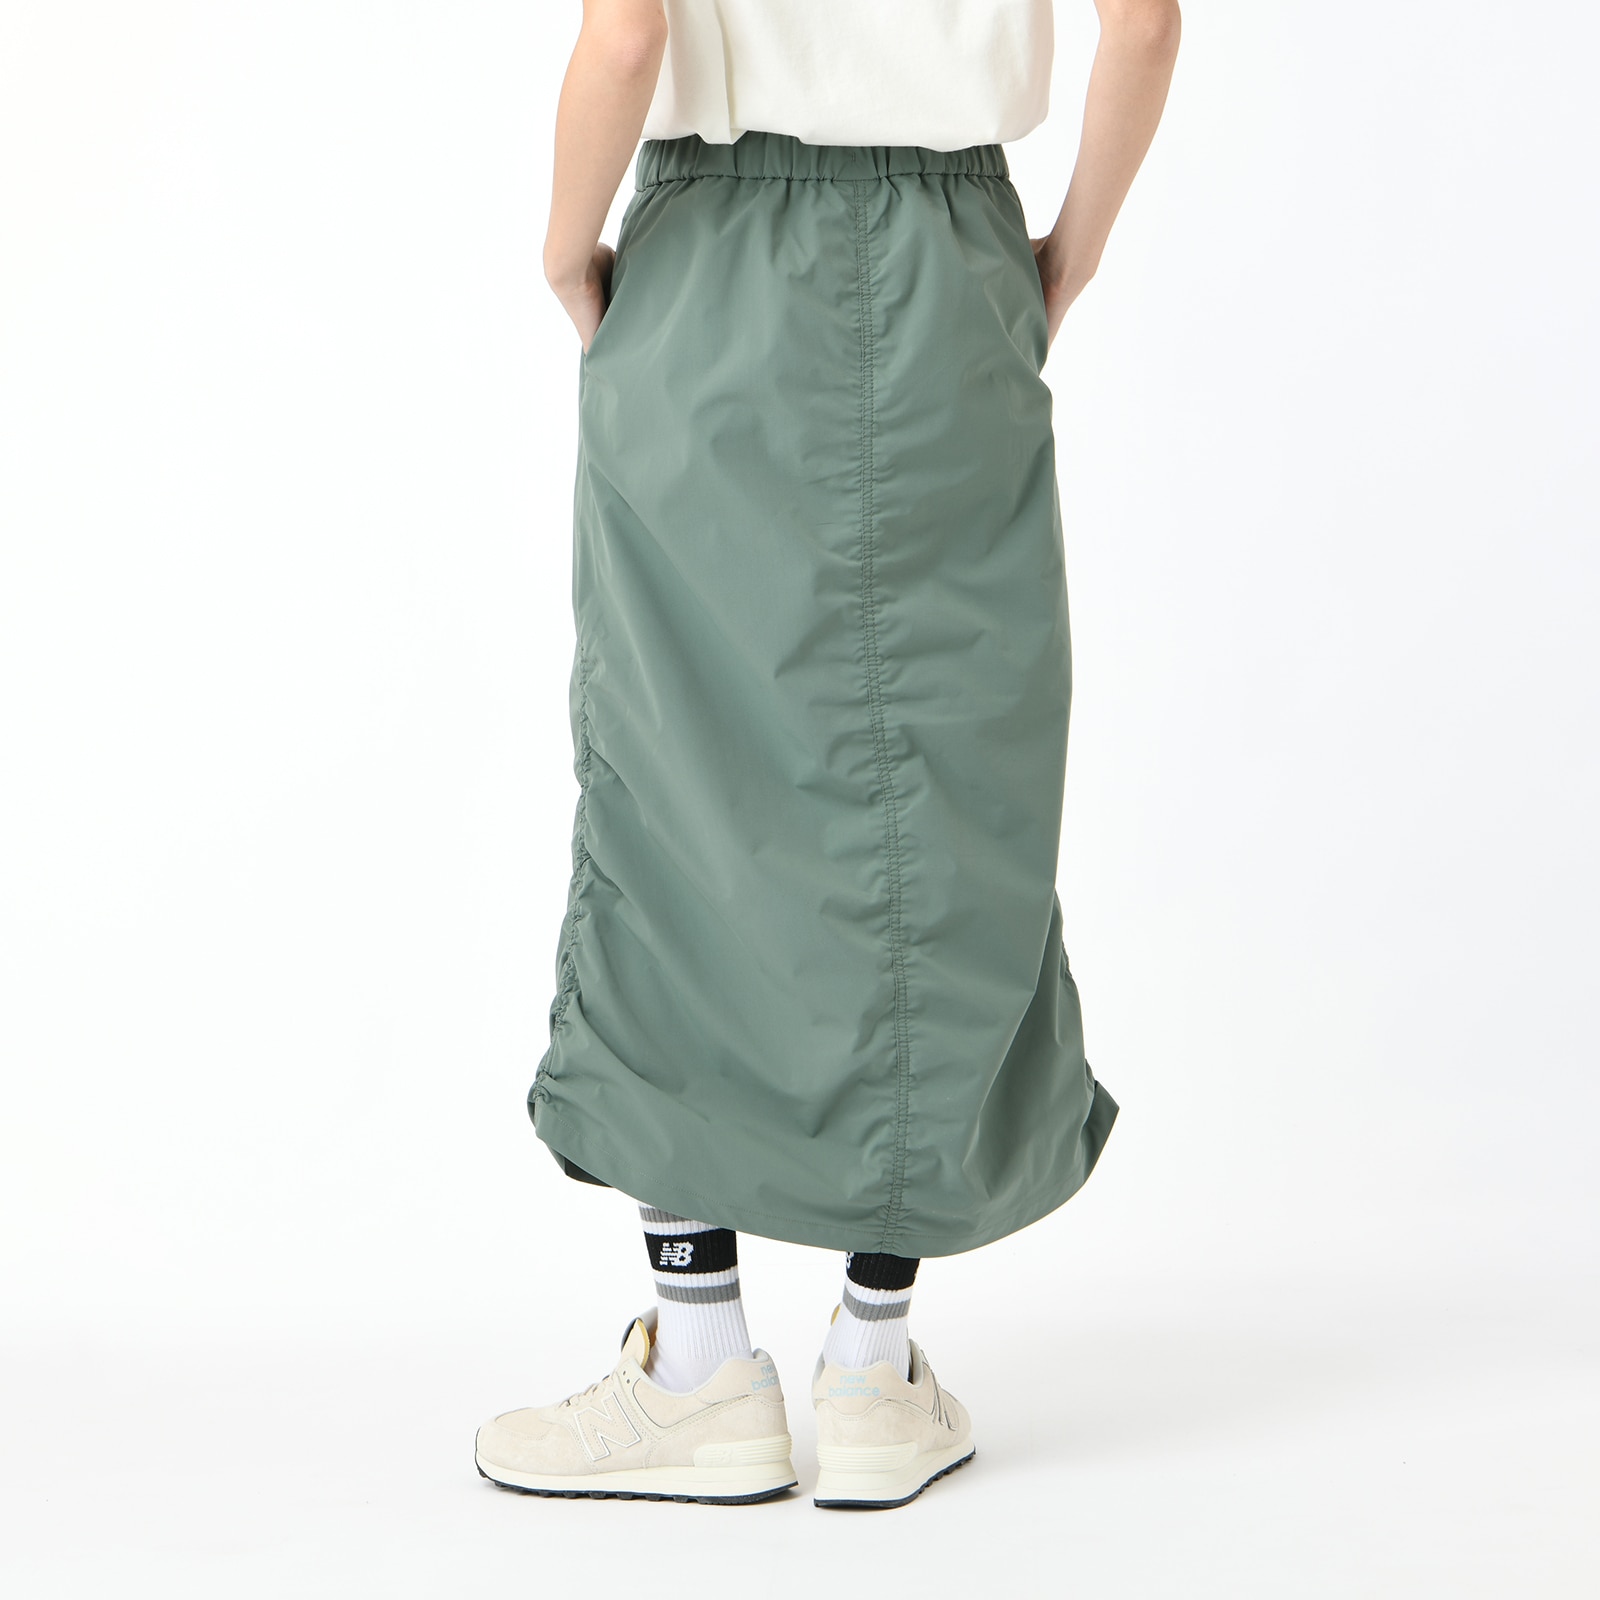 Woven skirt